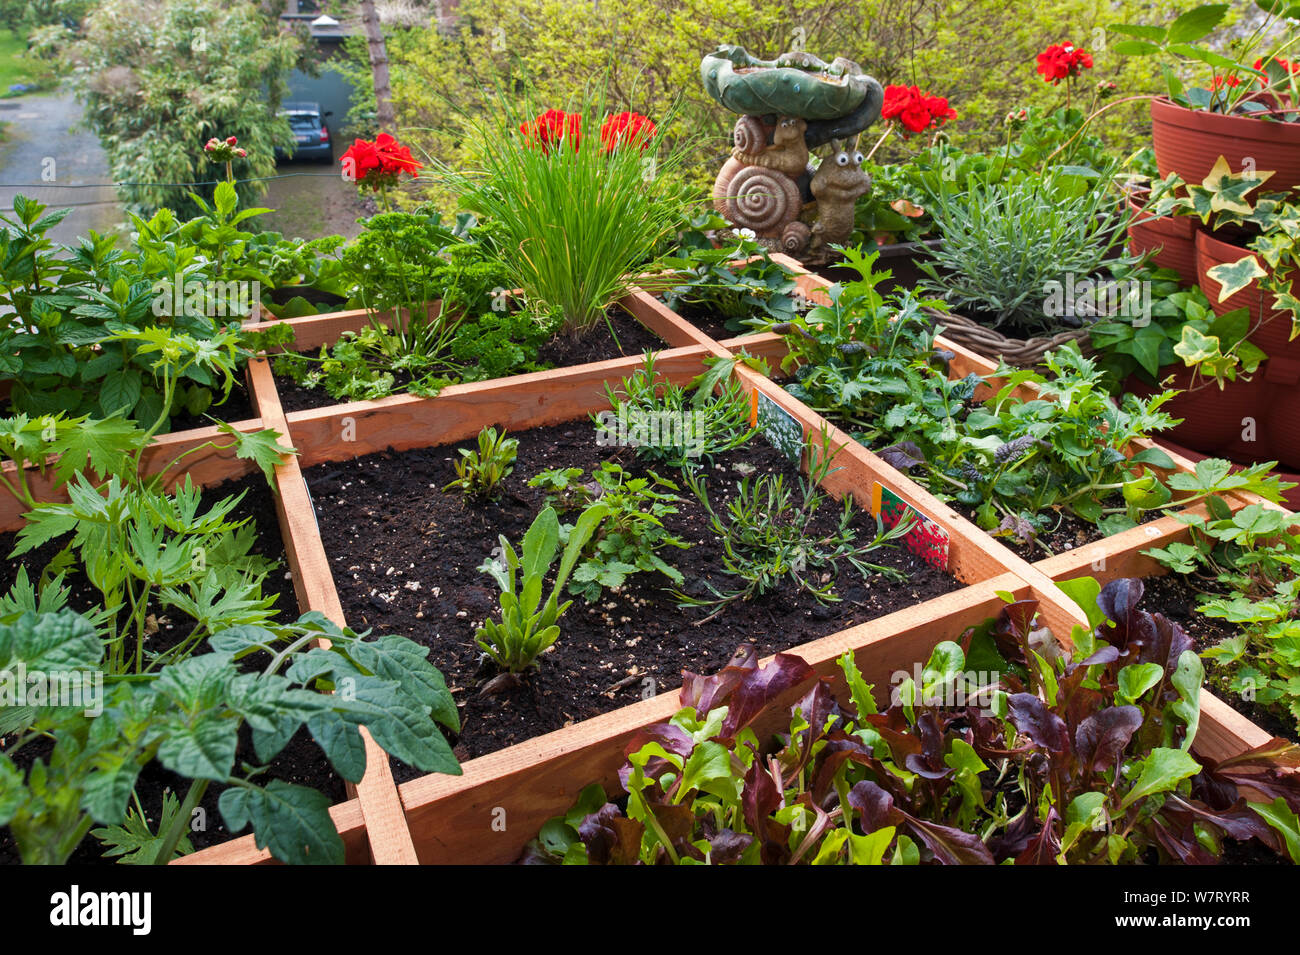 Pieds carrés, le jardin avec des fleurs, des herbes et des légumes en boîte bois sur balcon, Belgique. Mai 2013. Banque D'Images